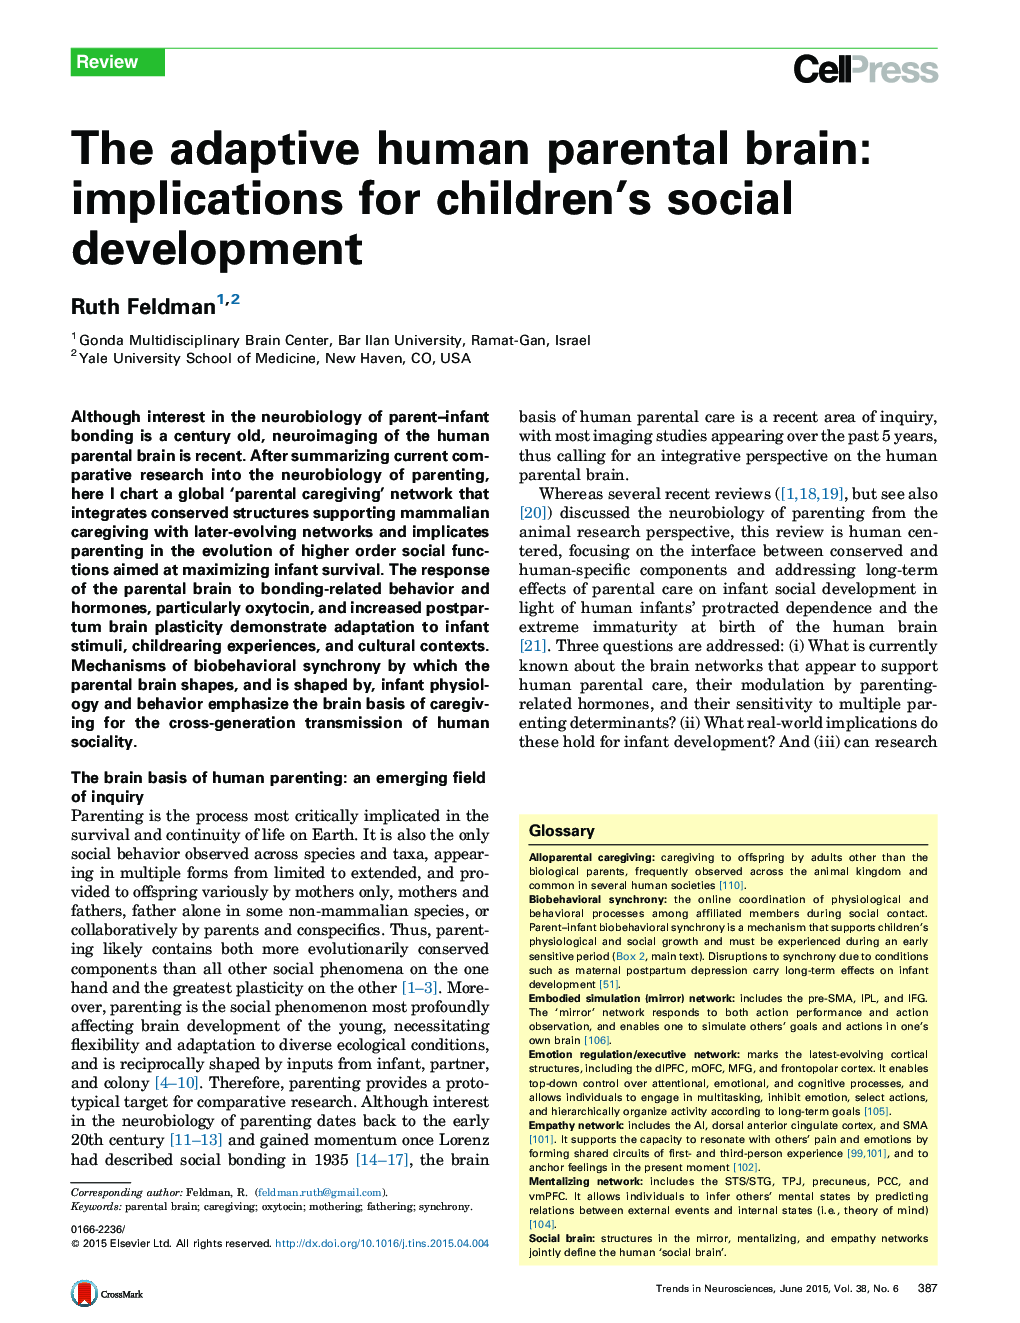 مغز انطباقی مادر والدین: مفاهیم برای توسعه اجتماعی کودکان 